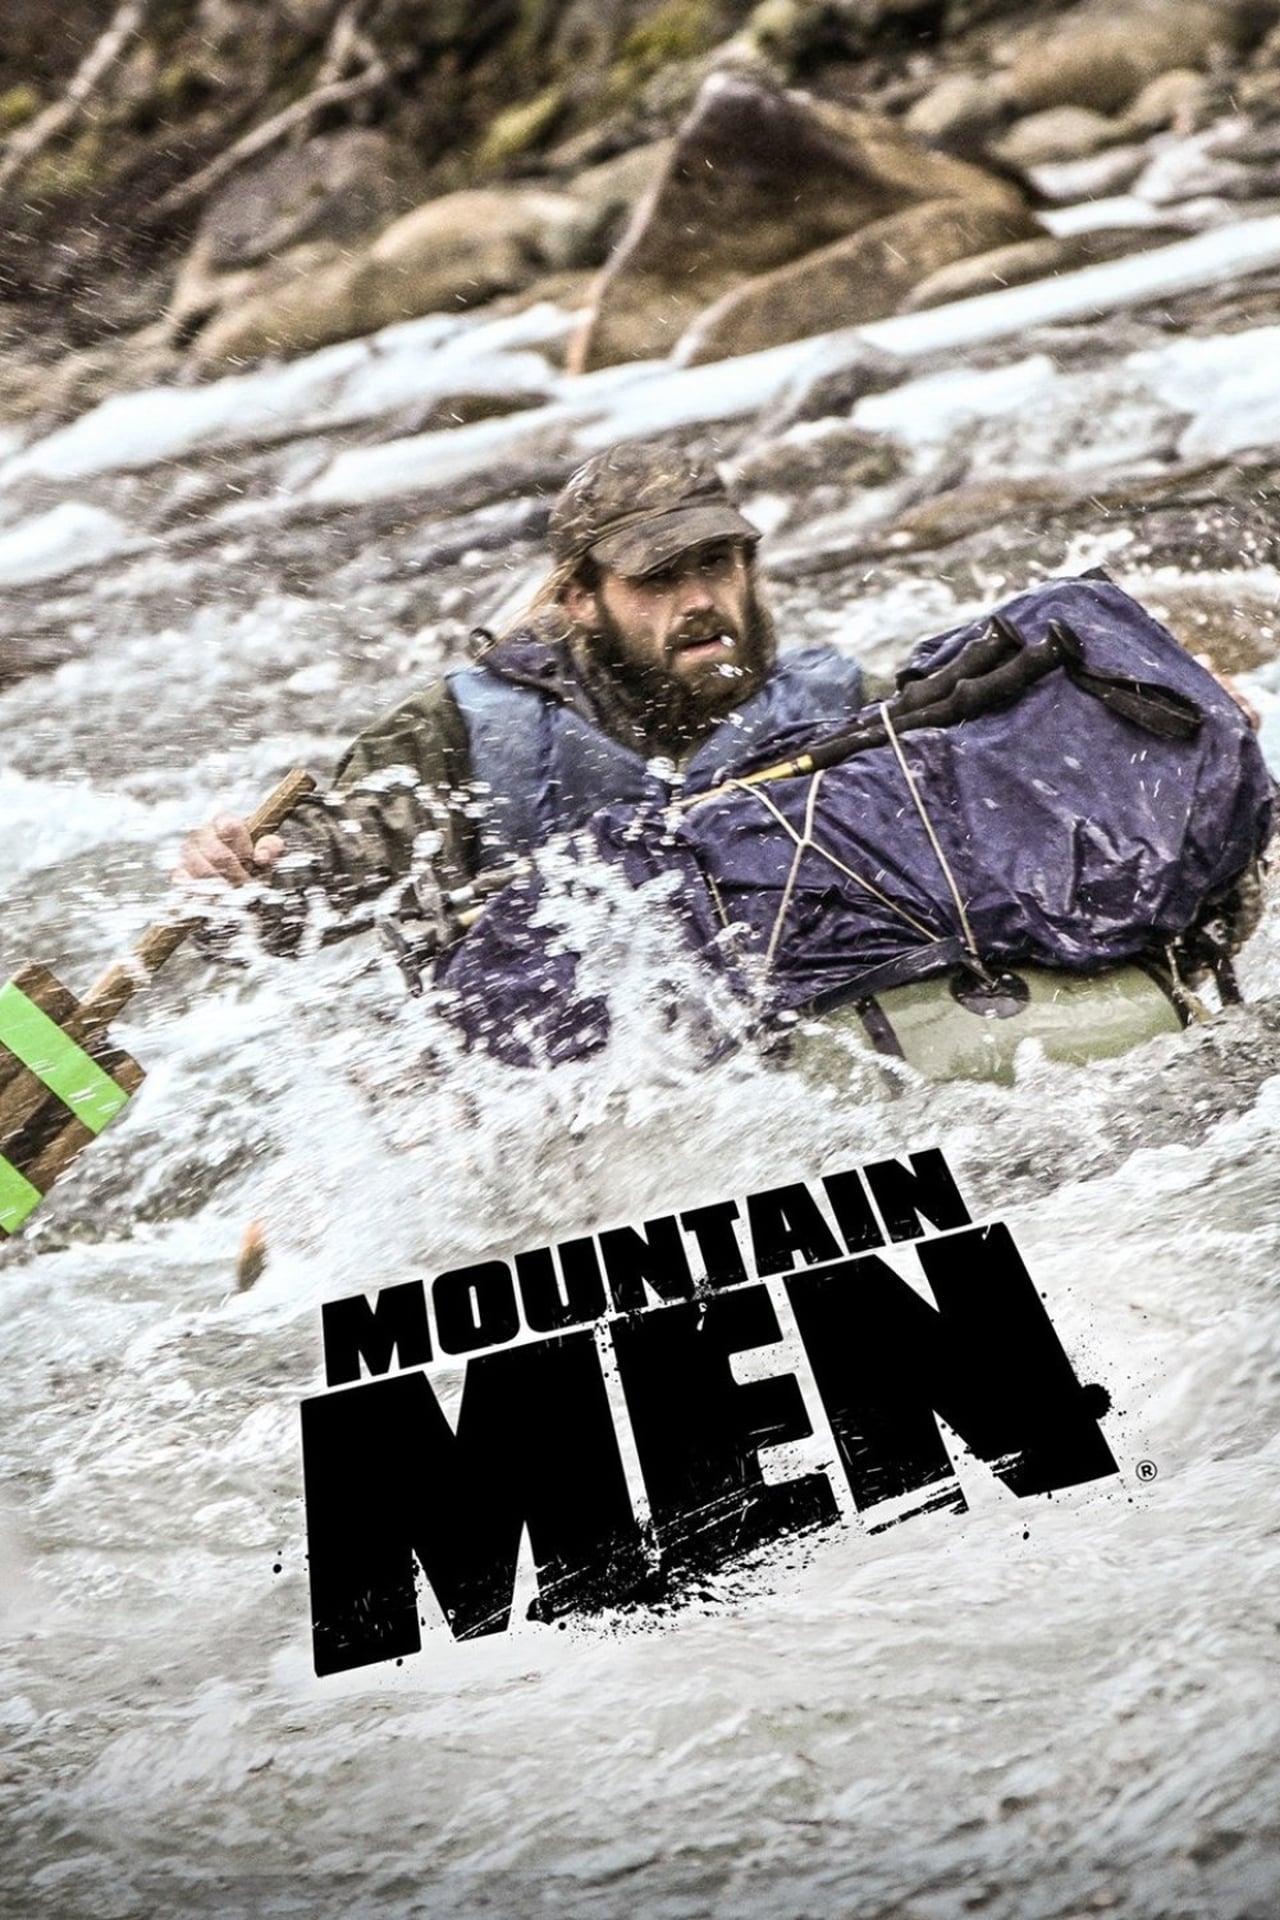 Mountain Men Season 8 Wiki Synopsis Reviews Movies Rankings